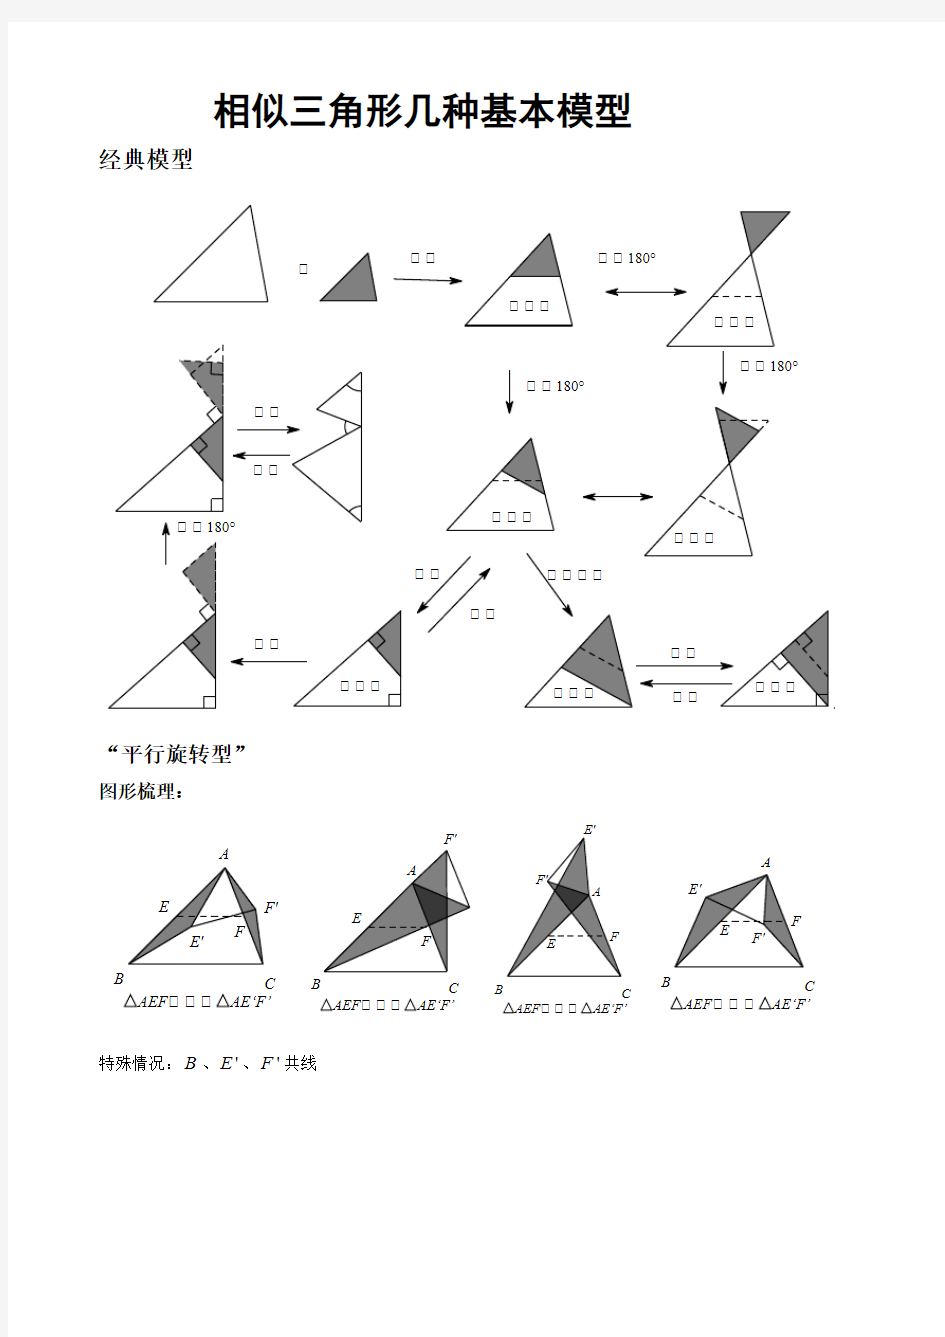 相似三角形几种基本模型(最新整理)